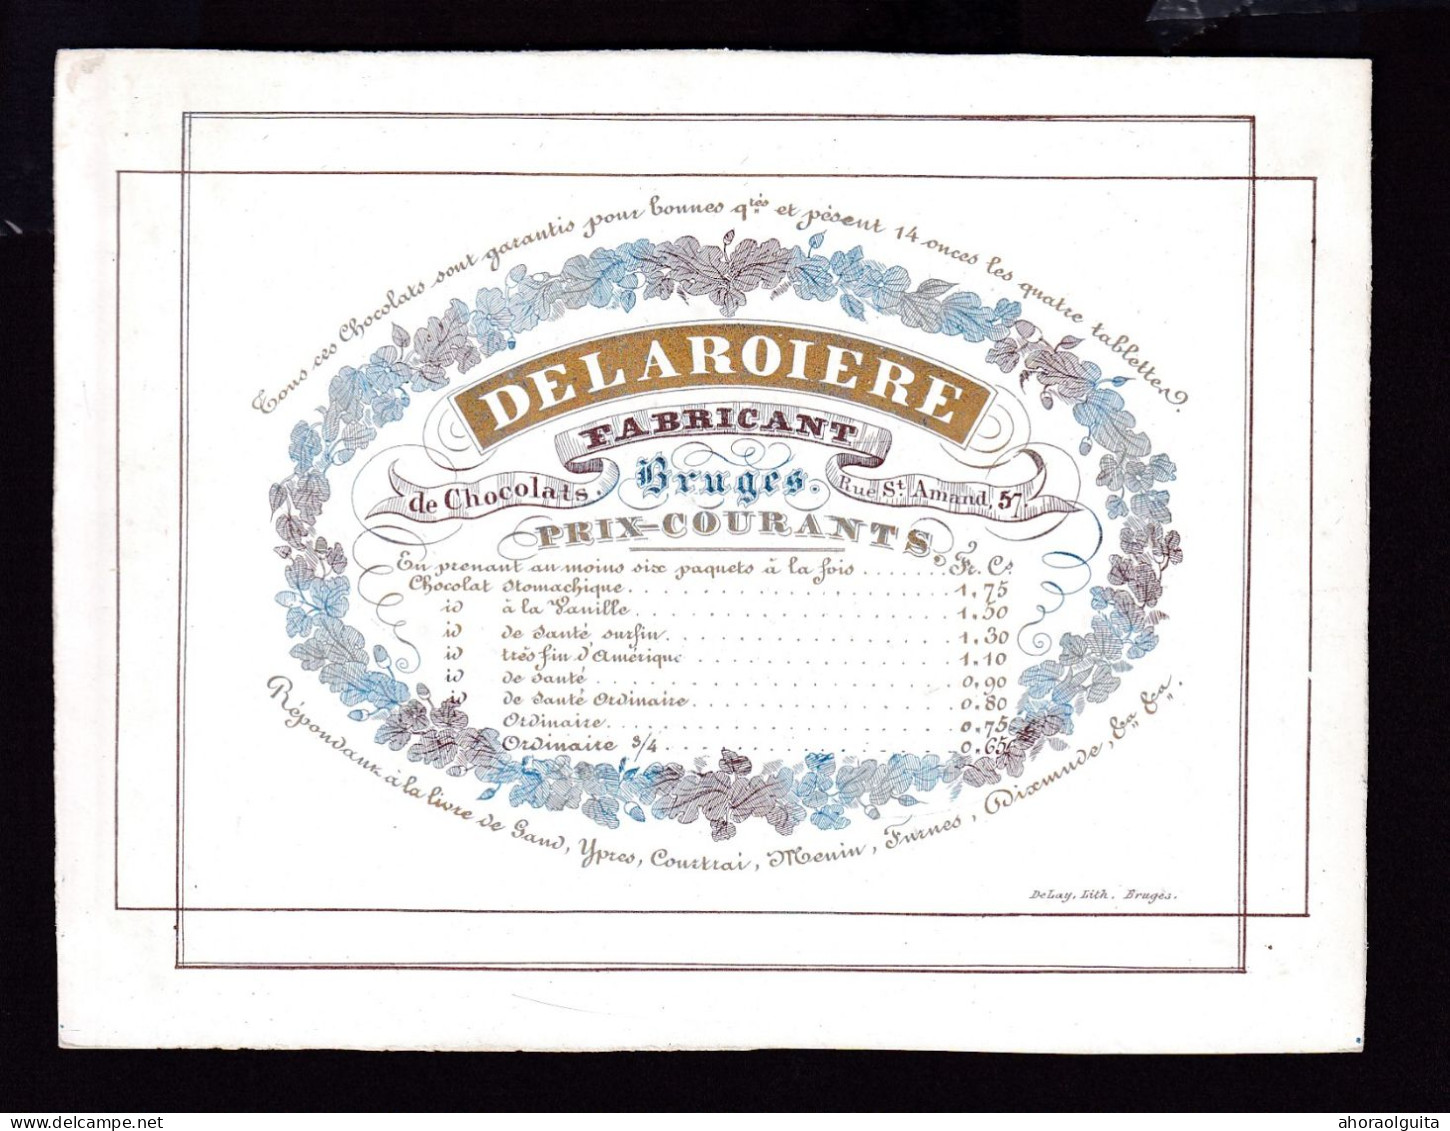 584/29 -- BRUGES CARTE PORCELAINE - Carte Illustrée Delaroiere, Fabricant De Chocolat  - Litho Années1840/50 - Visitekaartjes